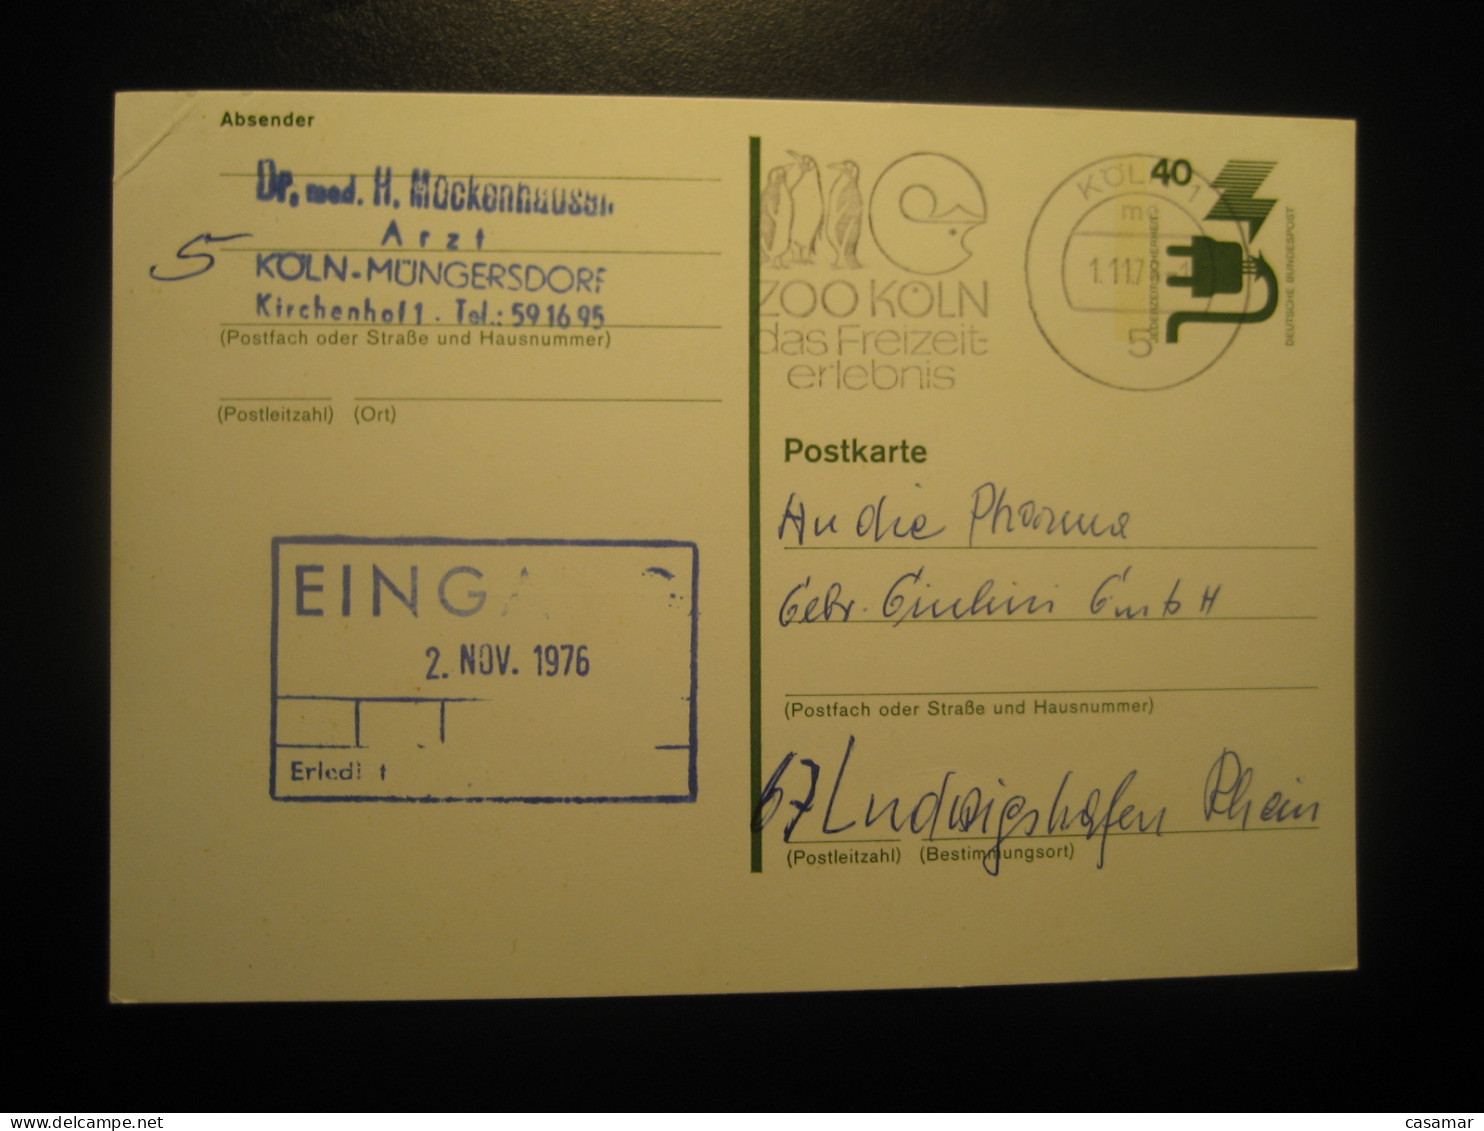 KOLN 1978 To Ludwigshafen Zoo Penguin Penguins Cancel Card GERMANY Antarctic Antarctics Antarctica Pole Polar - Antarktischen Tierwelt